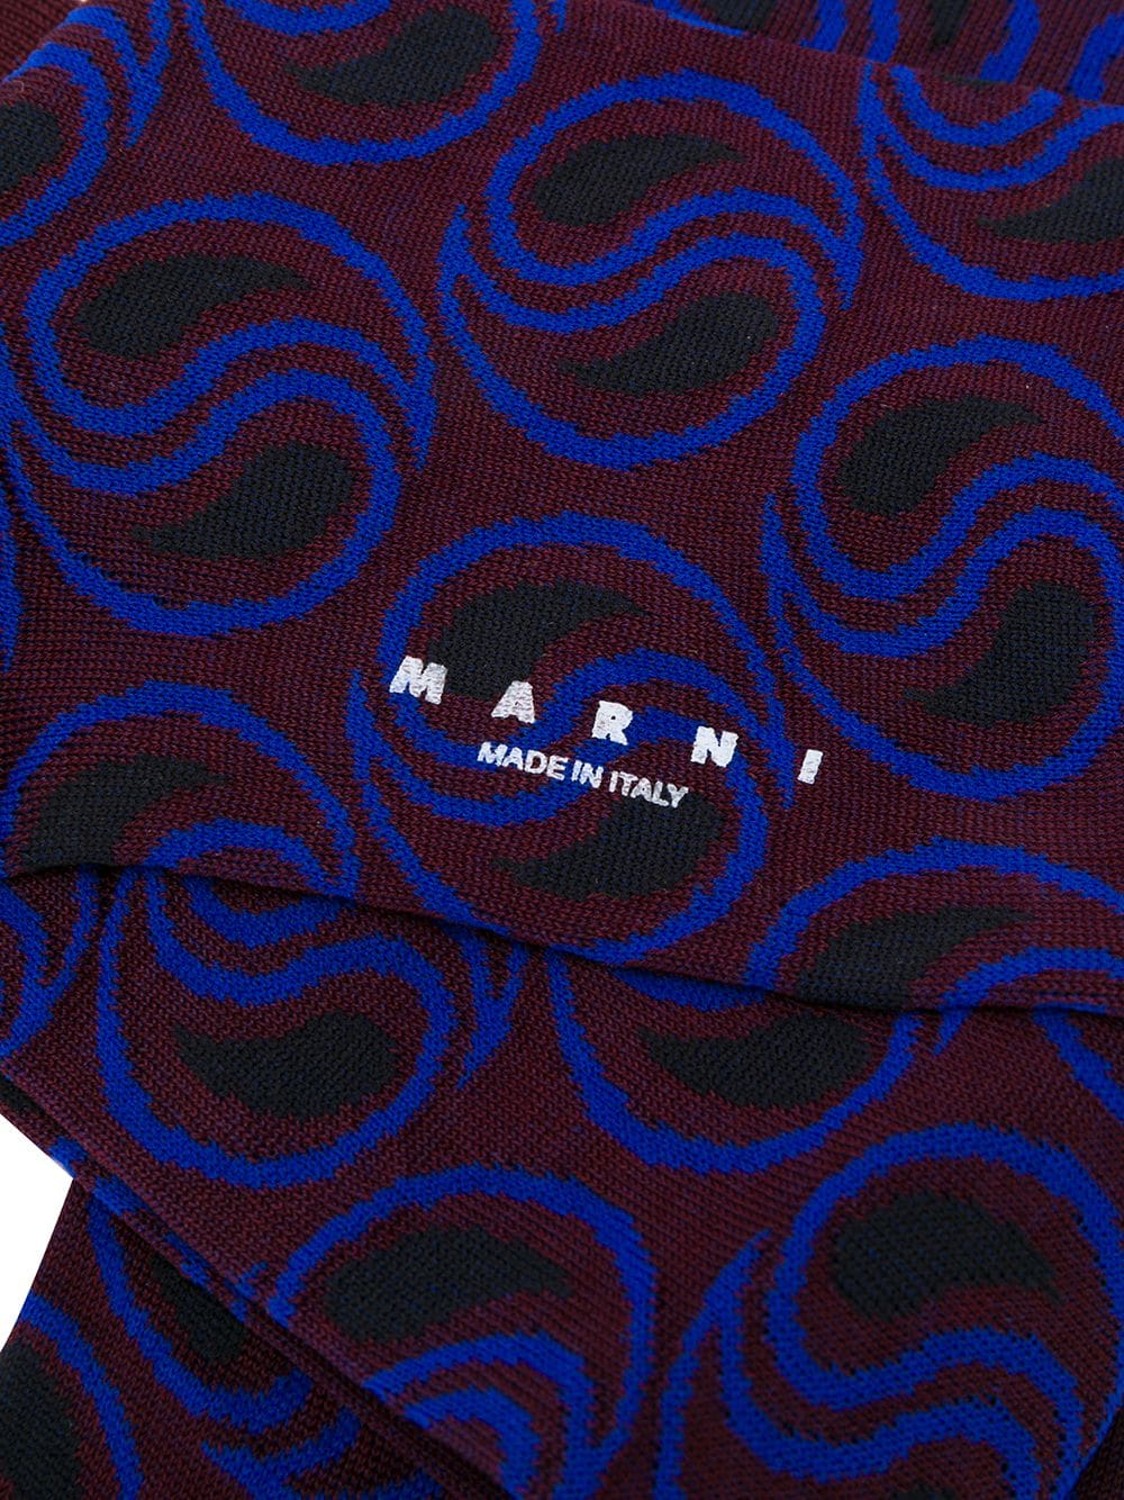 shop Marni  Accessori: Calzini Marni, in lana, intarsiati, multicolore.

Composizione: 100% lana. number 1535